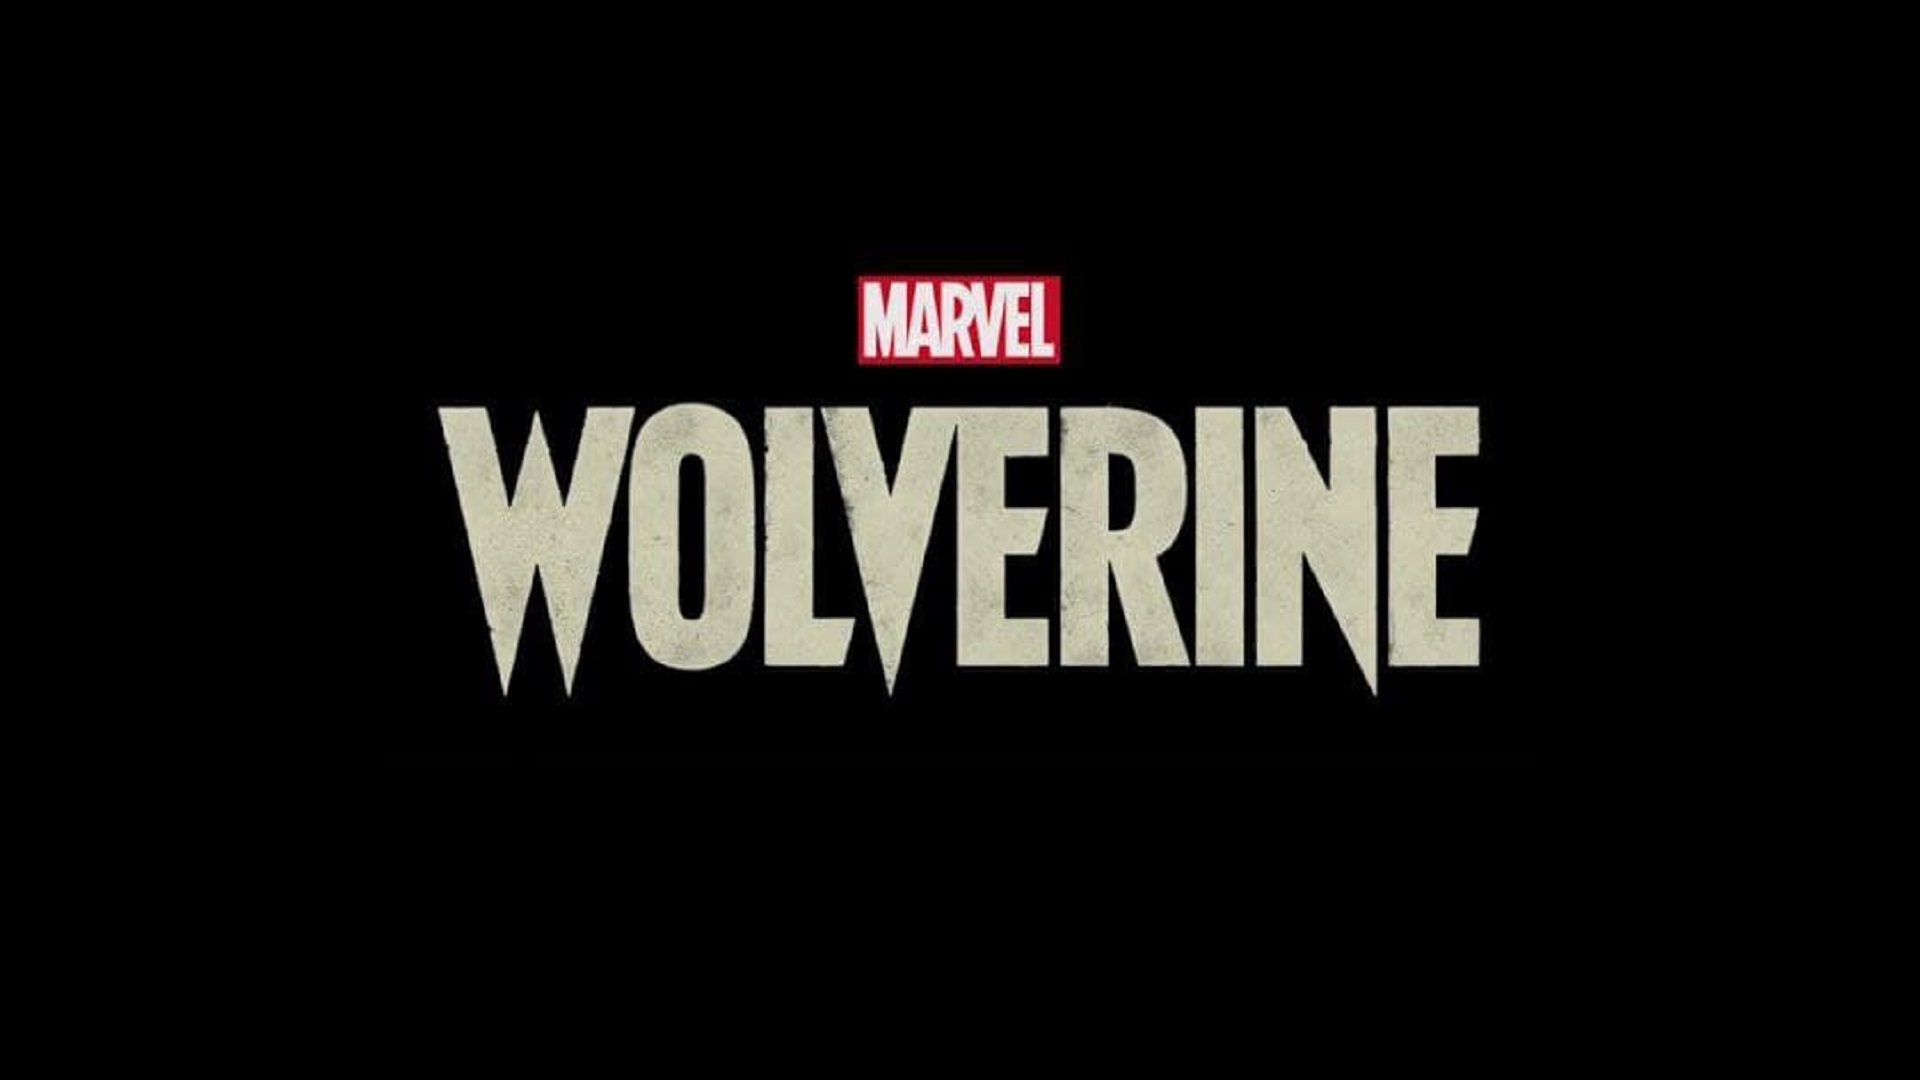 اشاره به شخصیت هالک در تریلر معرفی بازی Wolverine